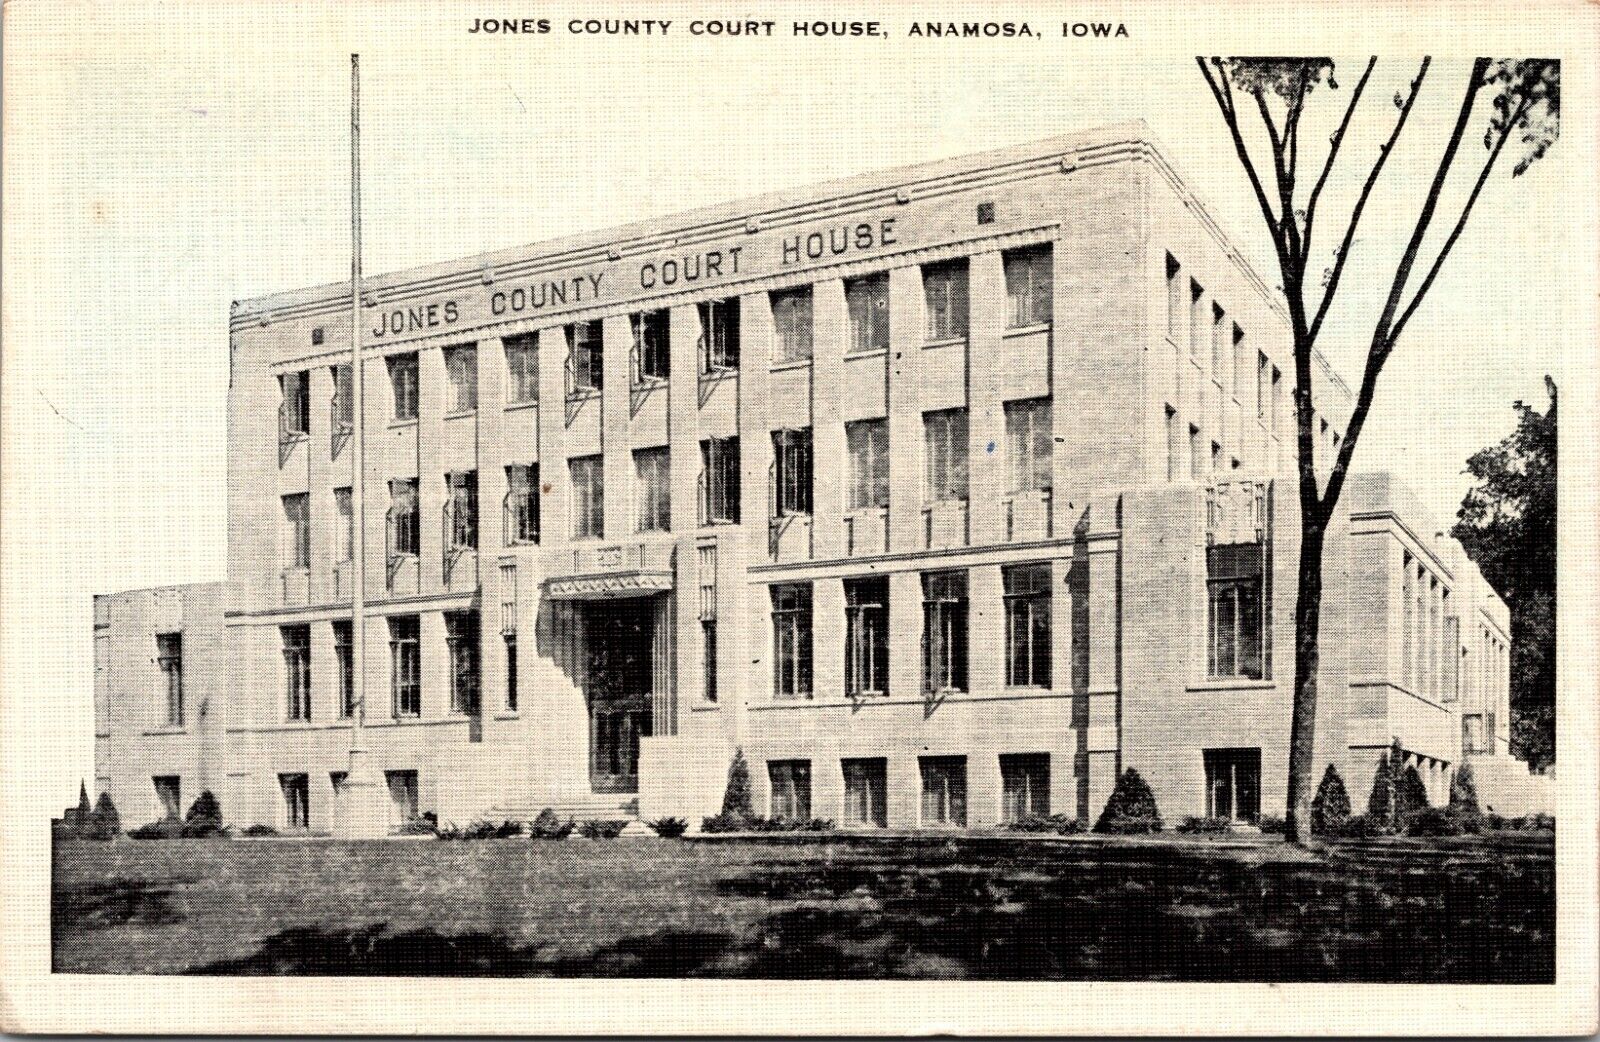 Jones County Court House, Anamosa, Iowa